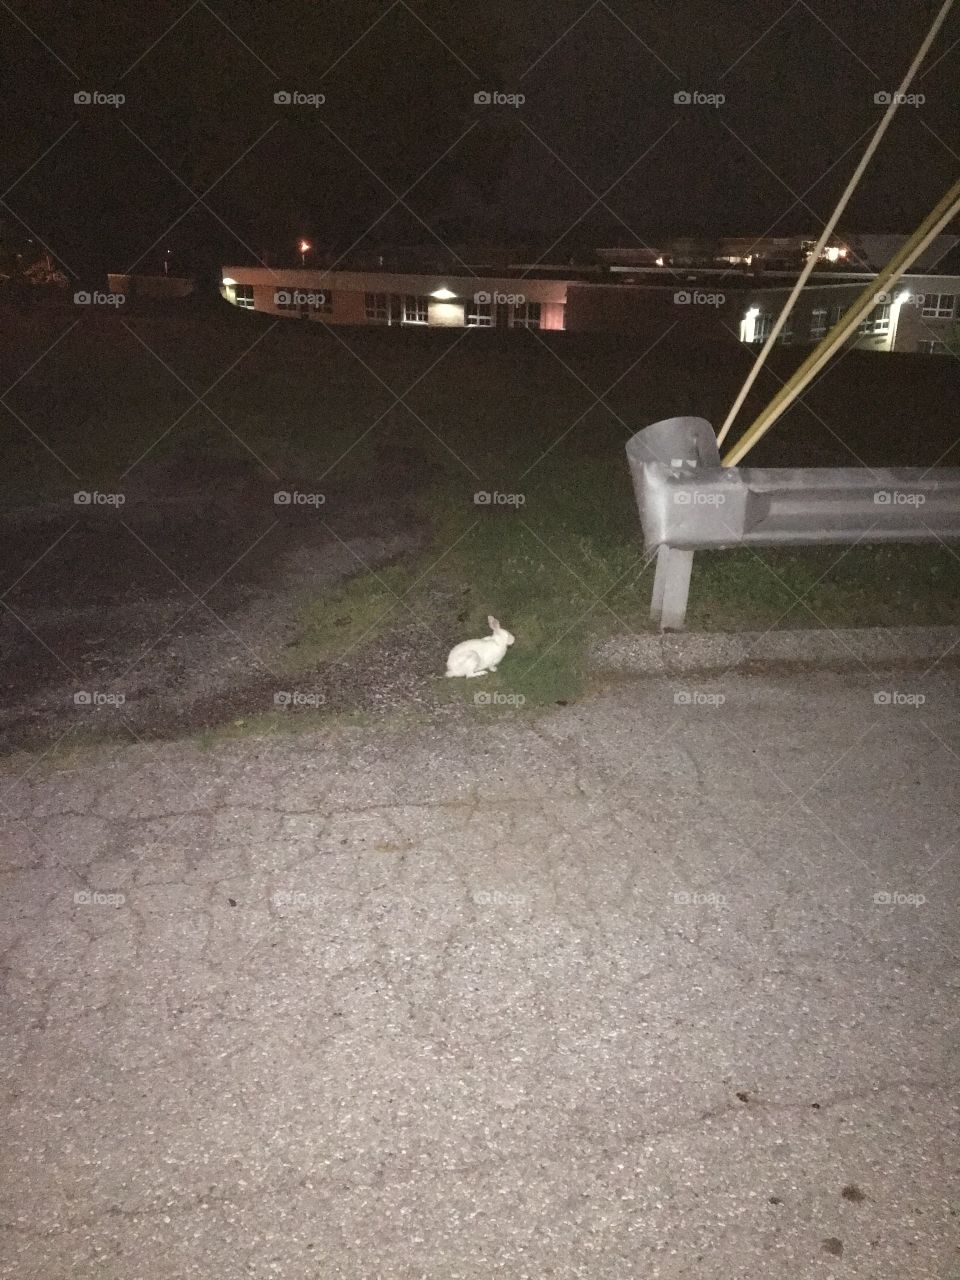 Fuzzy White Rabbit